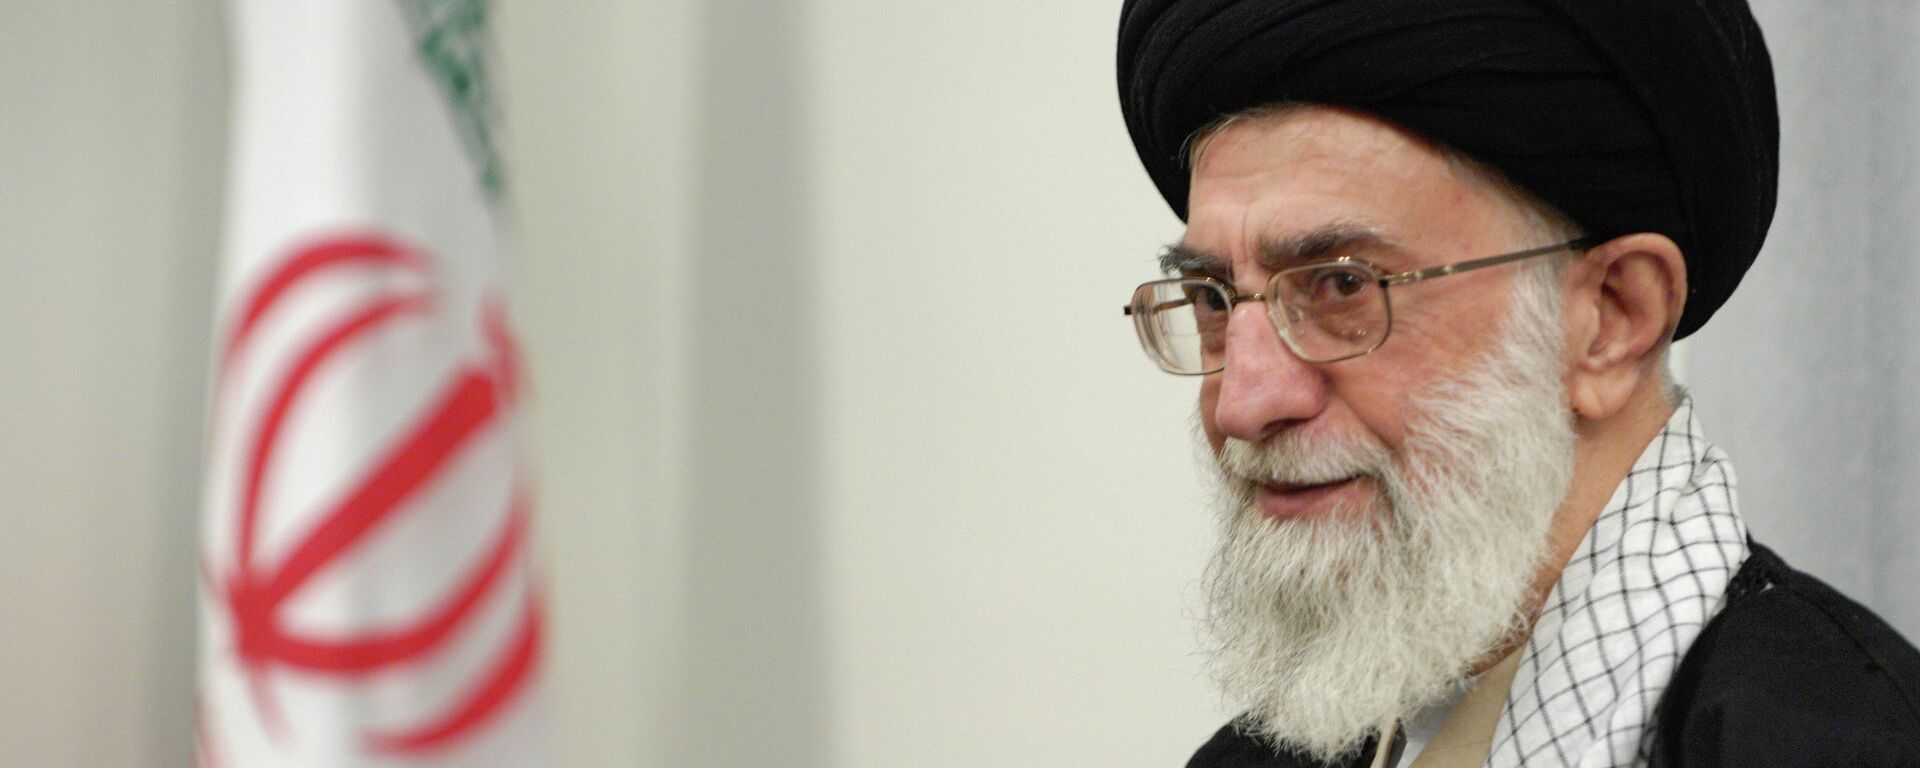 Духовный лидер Ирана аятолла Сейед Али Хаменеи. Архивное фото. - Sputnik Таджикистан, 1920, 21.01.2020